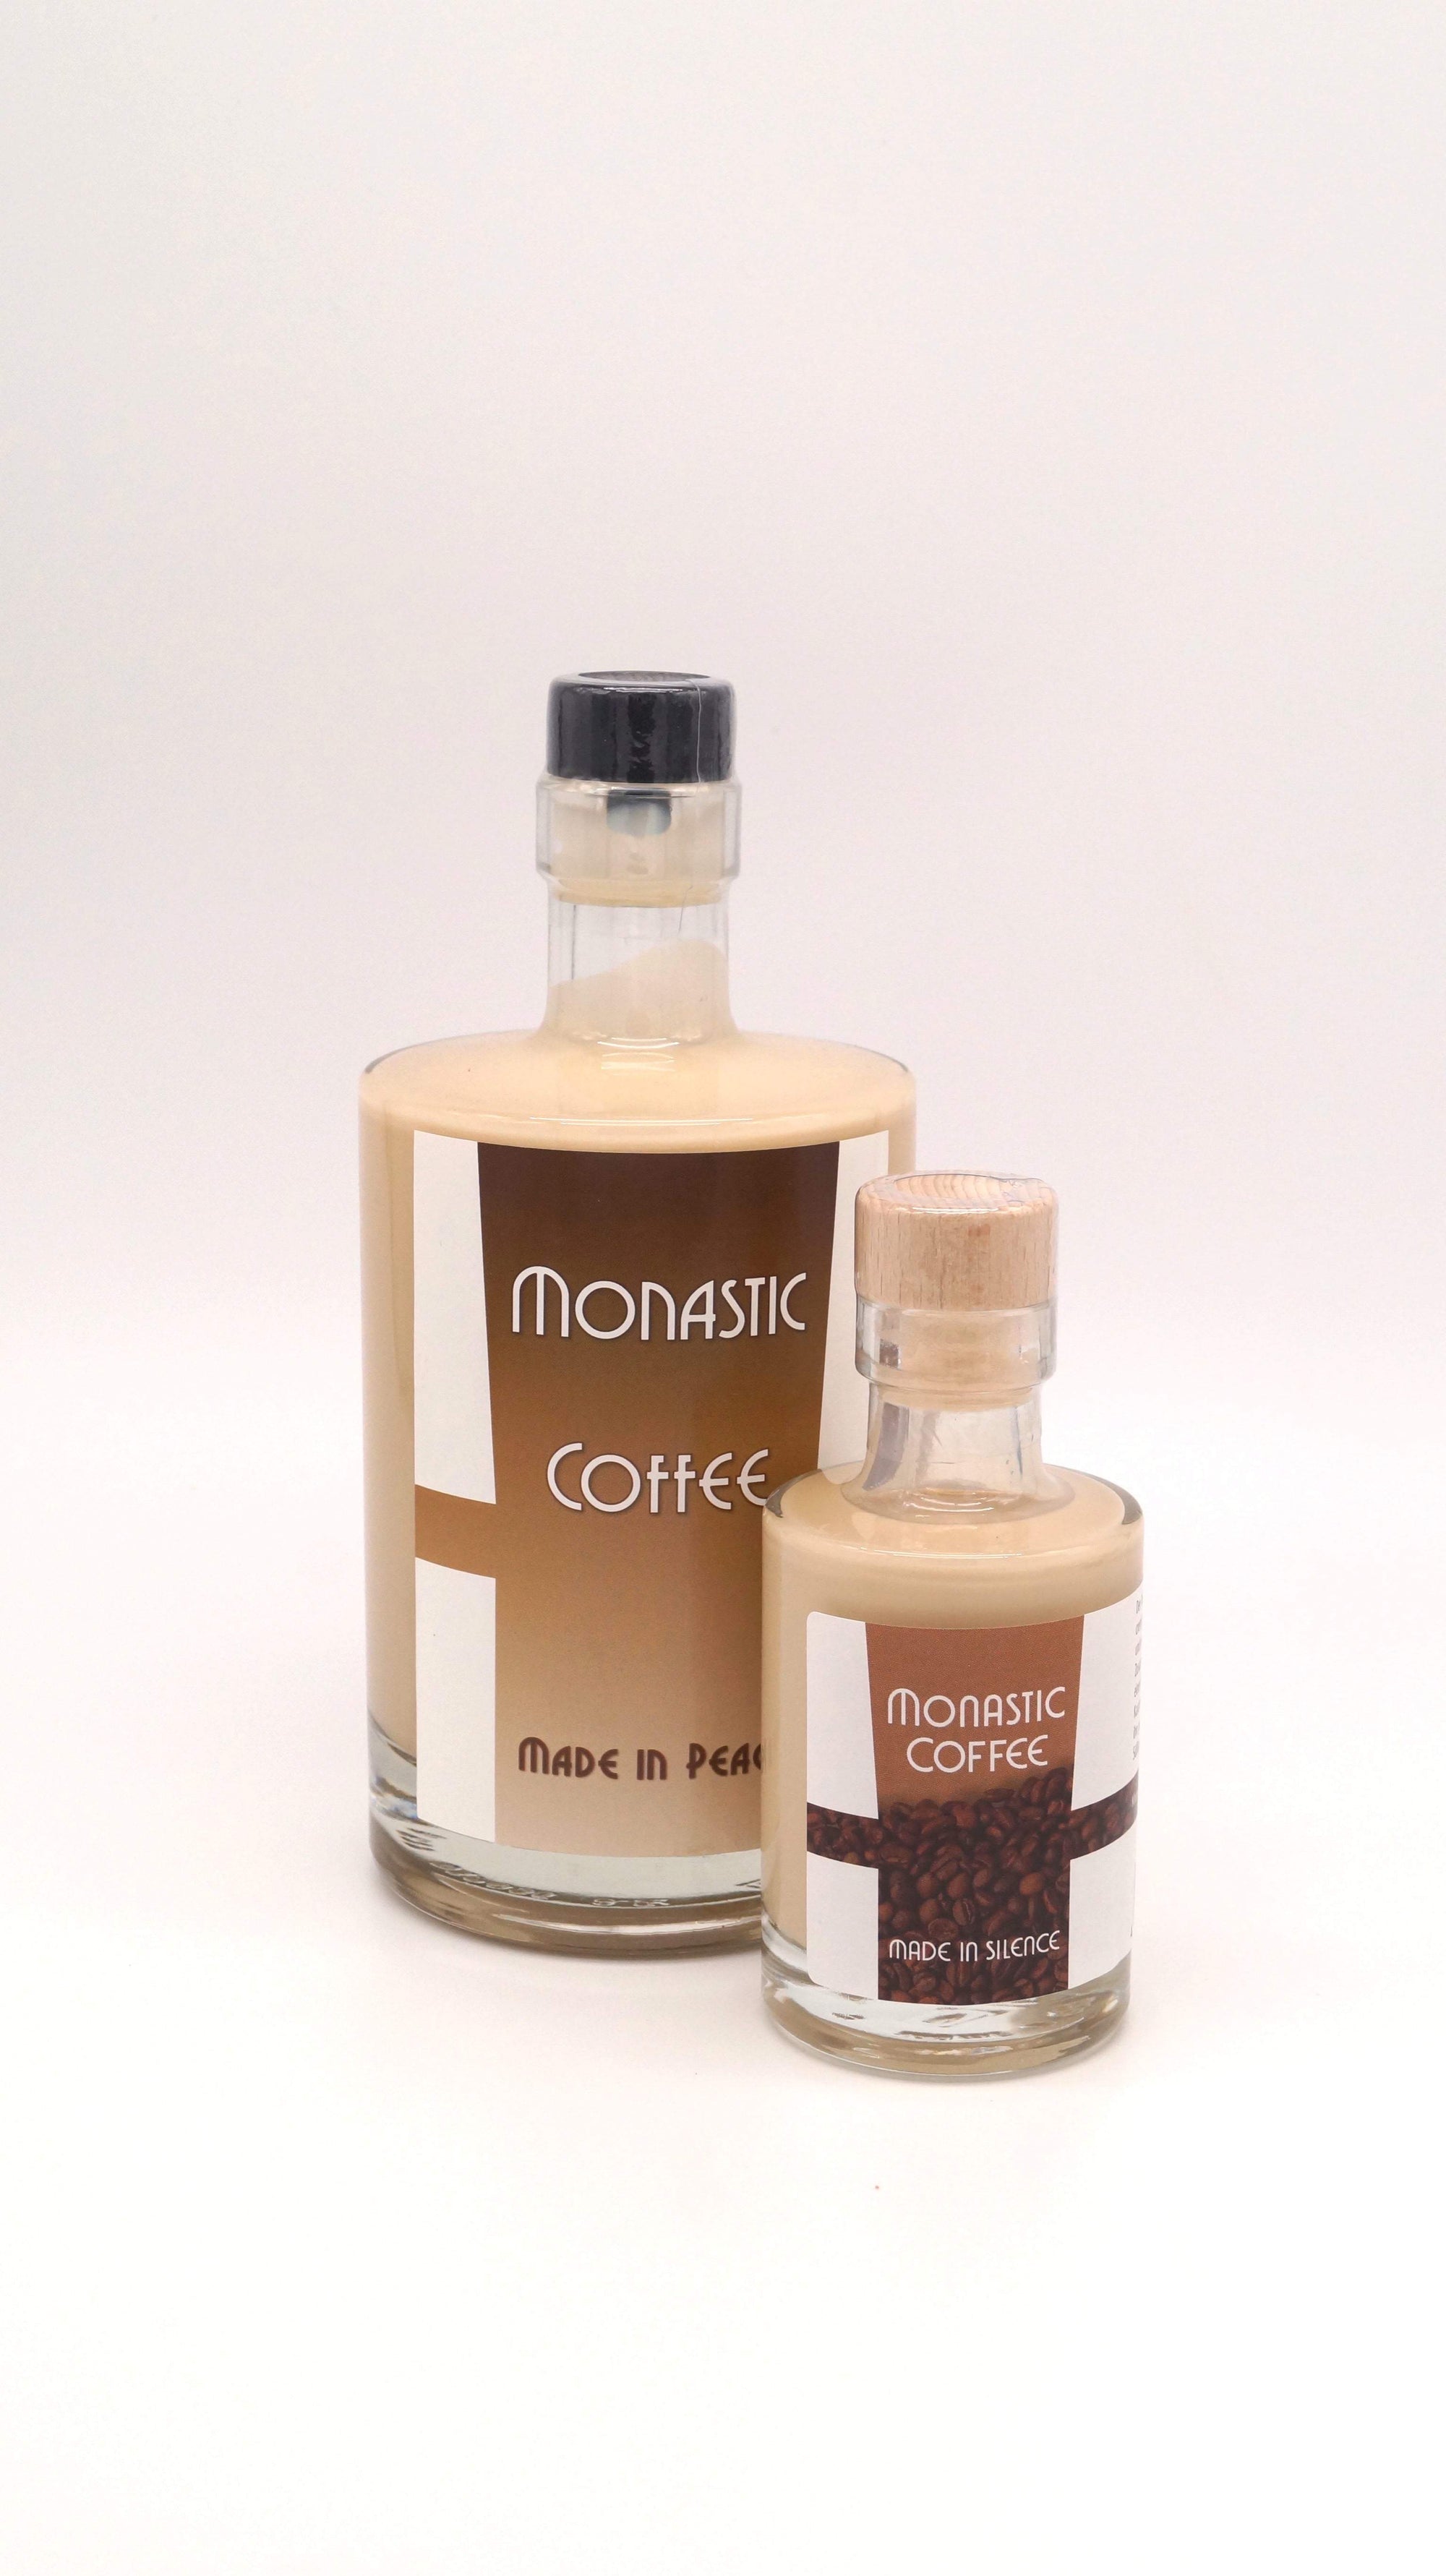 Monastic Coffee Gin-Monastic-Gin,Spirituosen